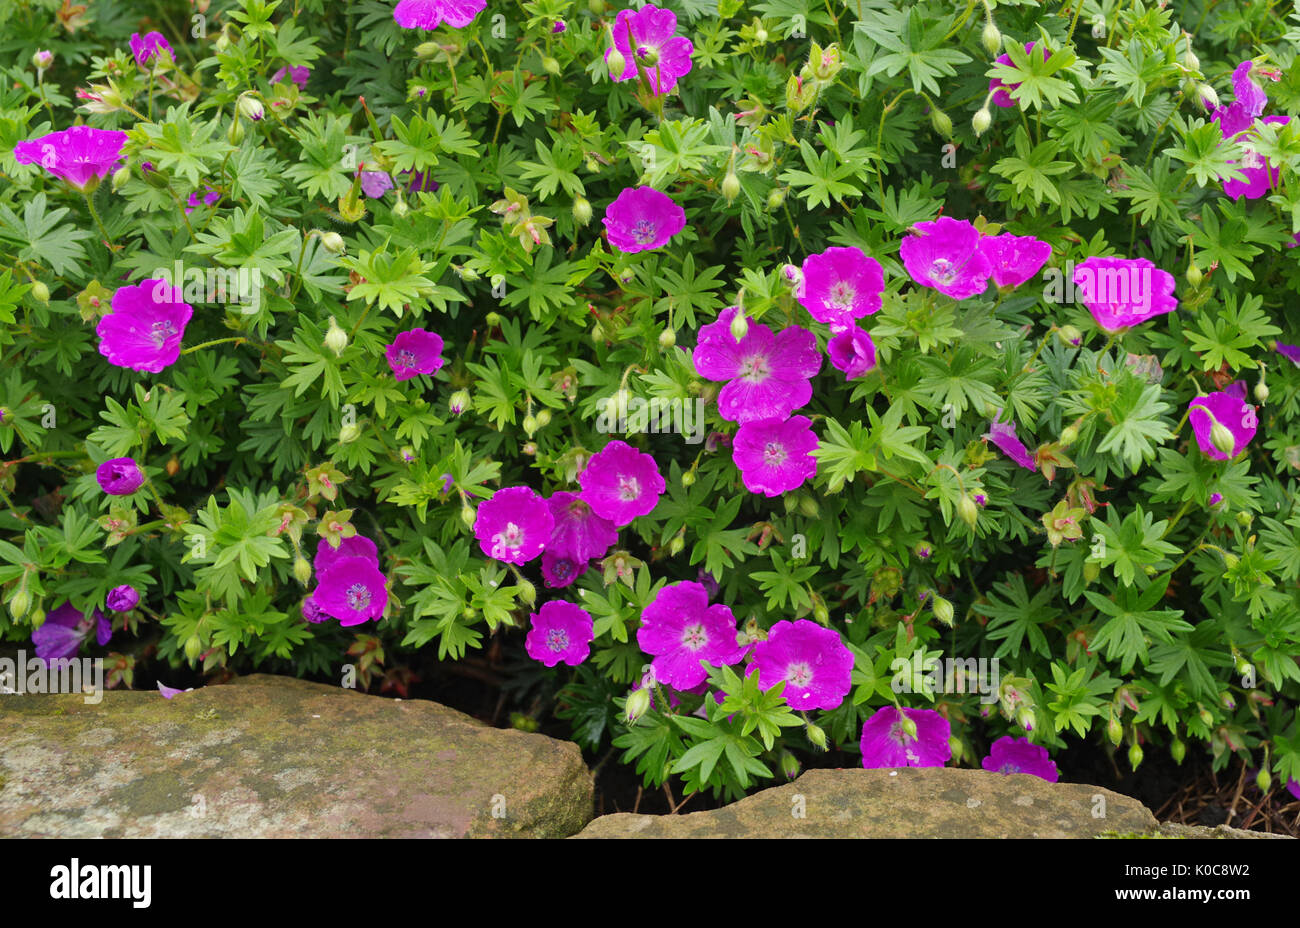 Deep pink piccolo fiore di geranio perenne pianta che cresce in giardino inglese accanto a spiovente di bordatura in pietra arenaria. Foto Stock